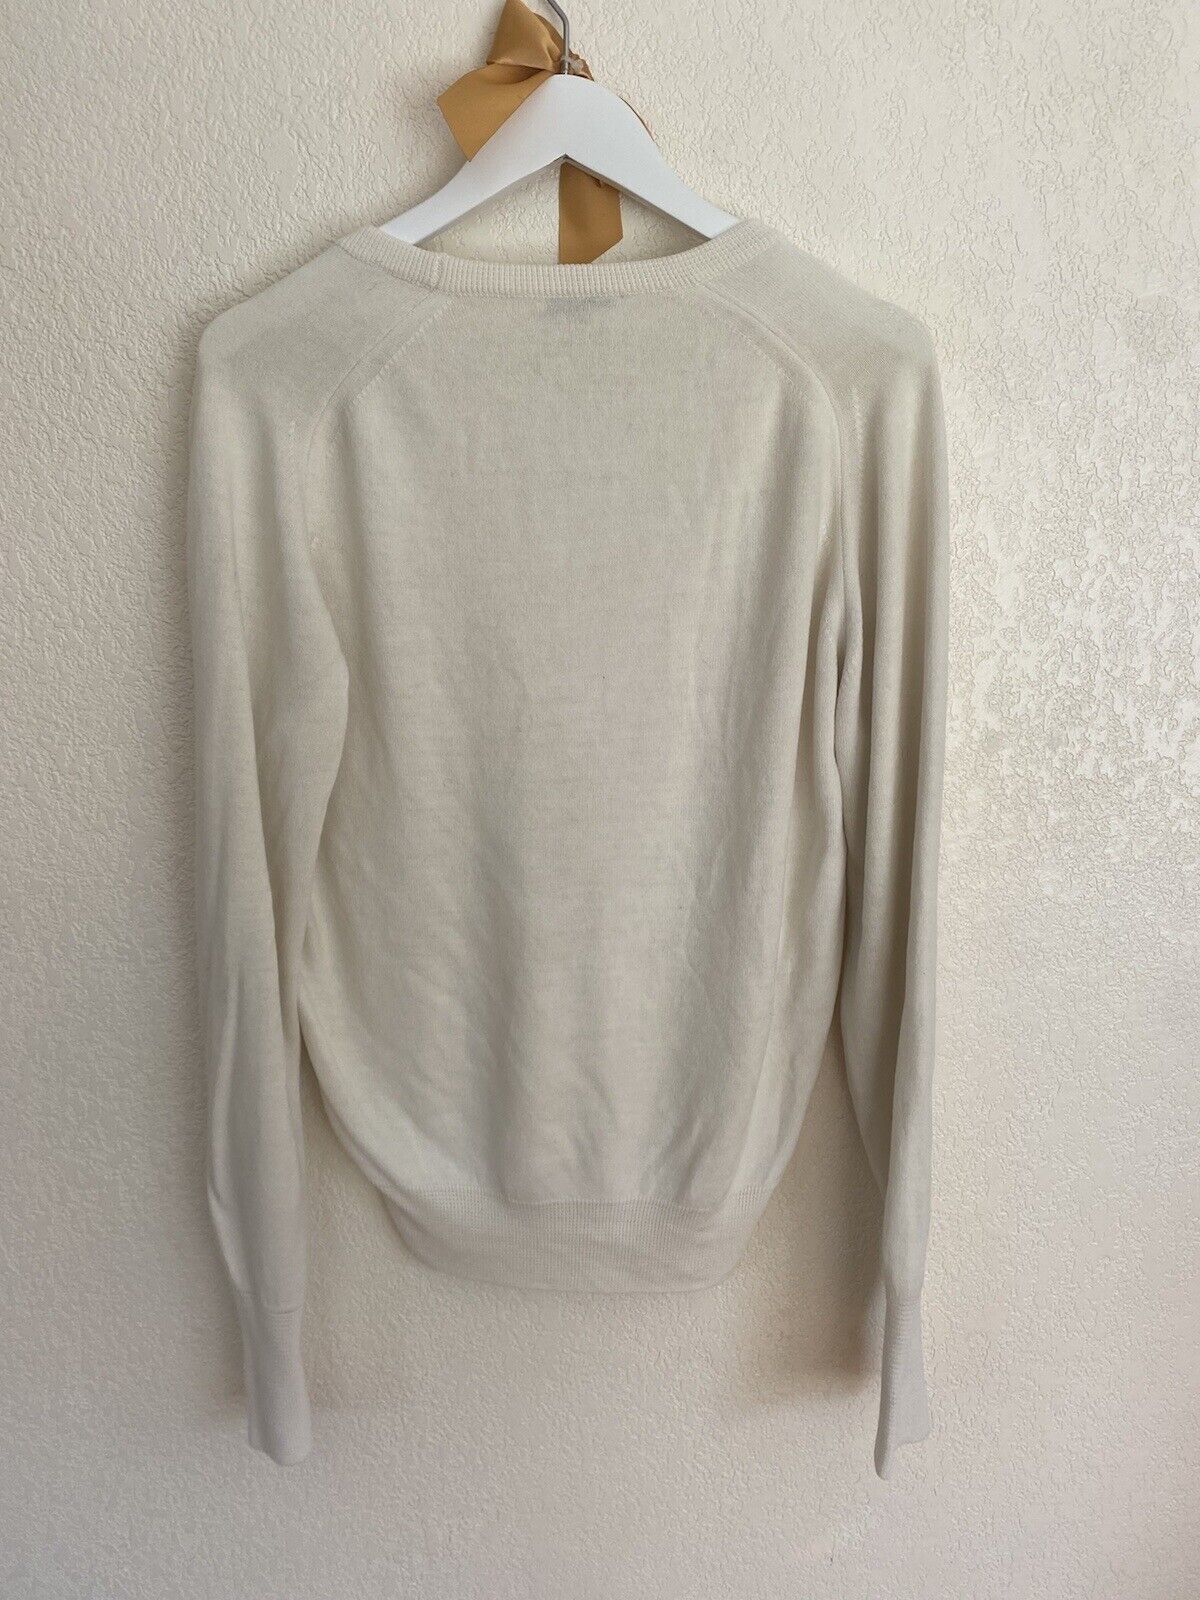 White V-Neck Sweater - Duvet - Men’s Small